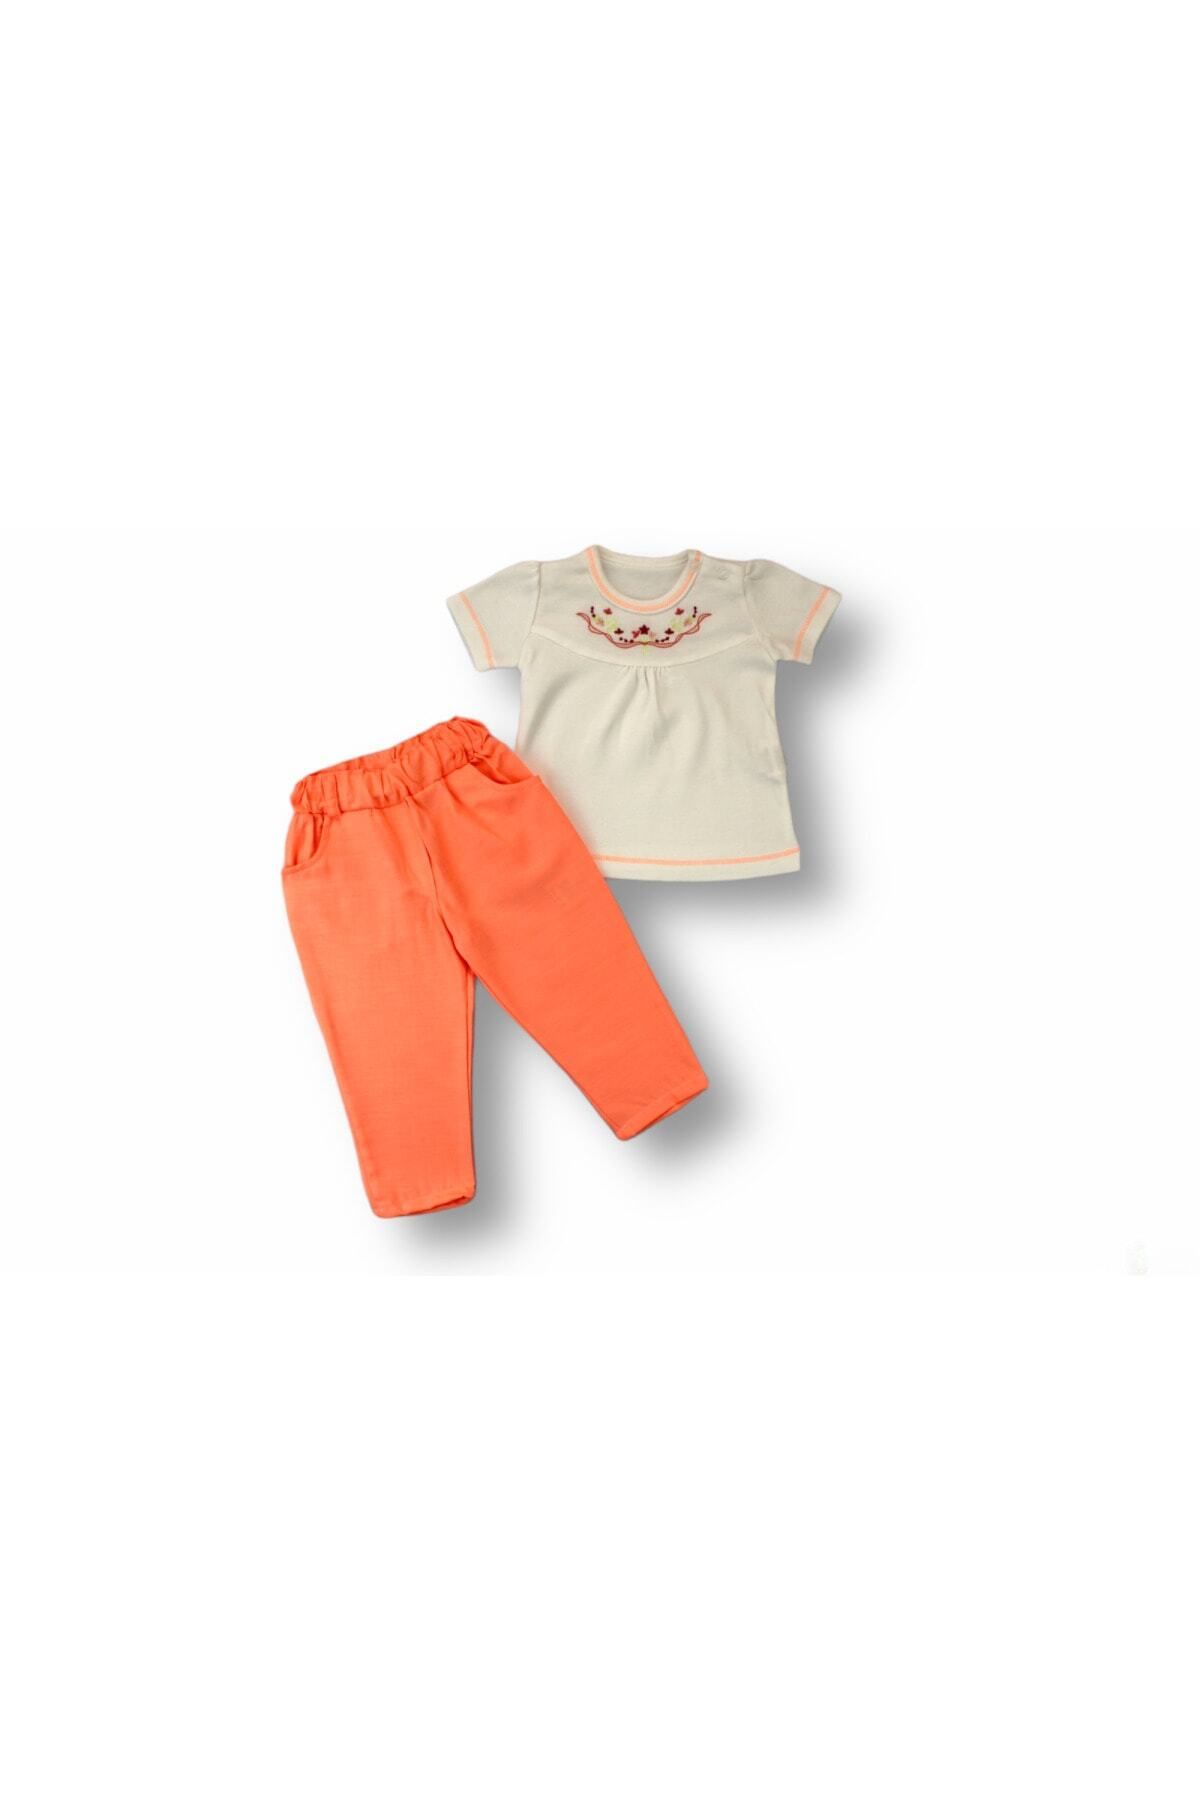 Tomuycuk 2li Kız Bebek Çocuk Takım Turuncu Neon Pantolonlu 3-6-9-12 Ay Bebek Takımları Kıyafetleri Giysileri